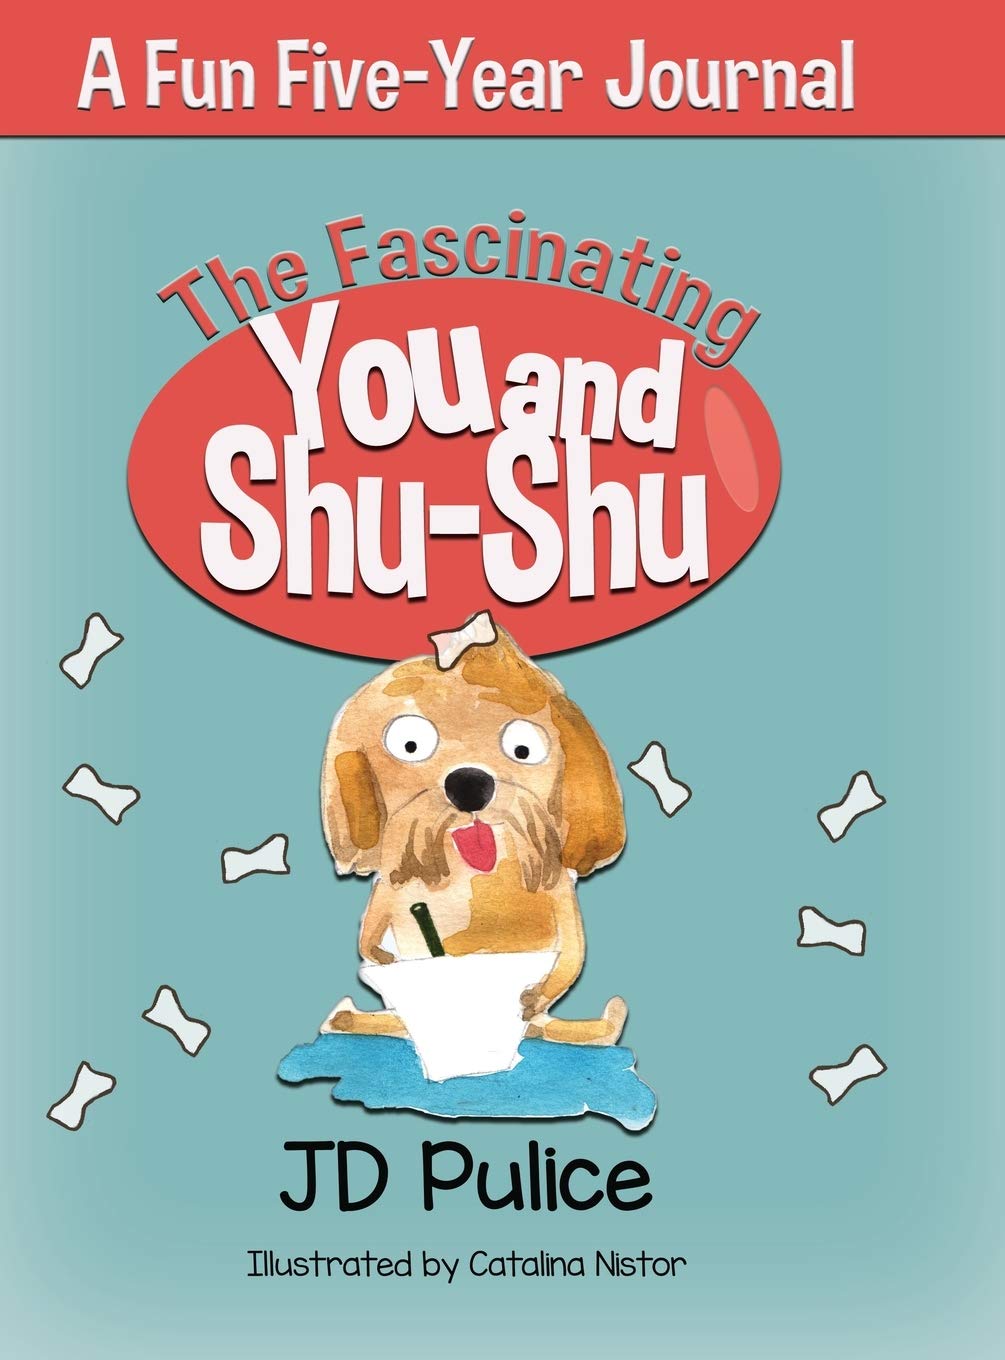 The Fascinating You and Shu-shu